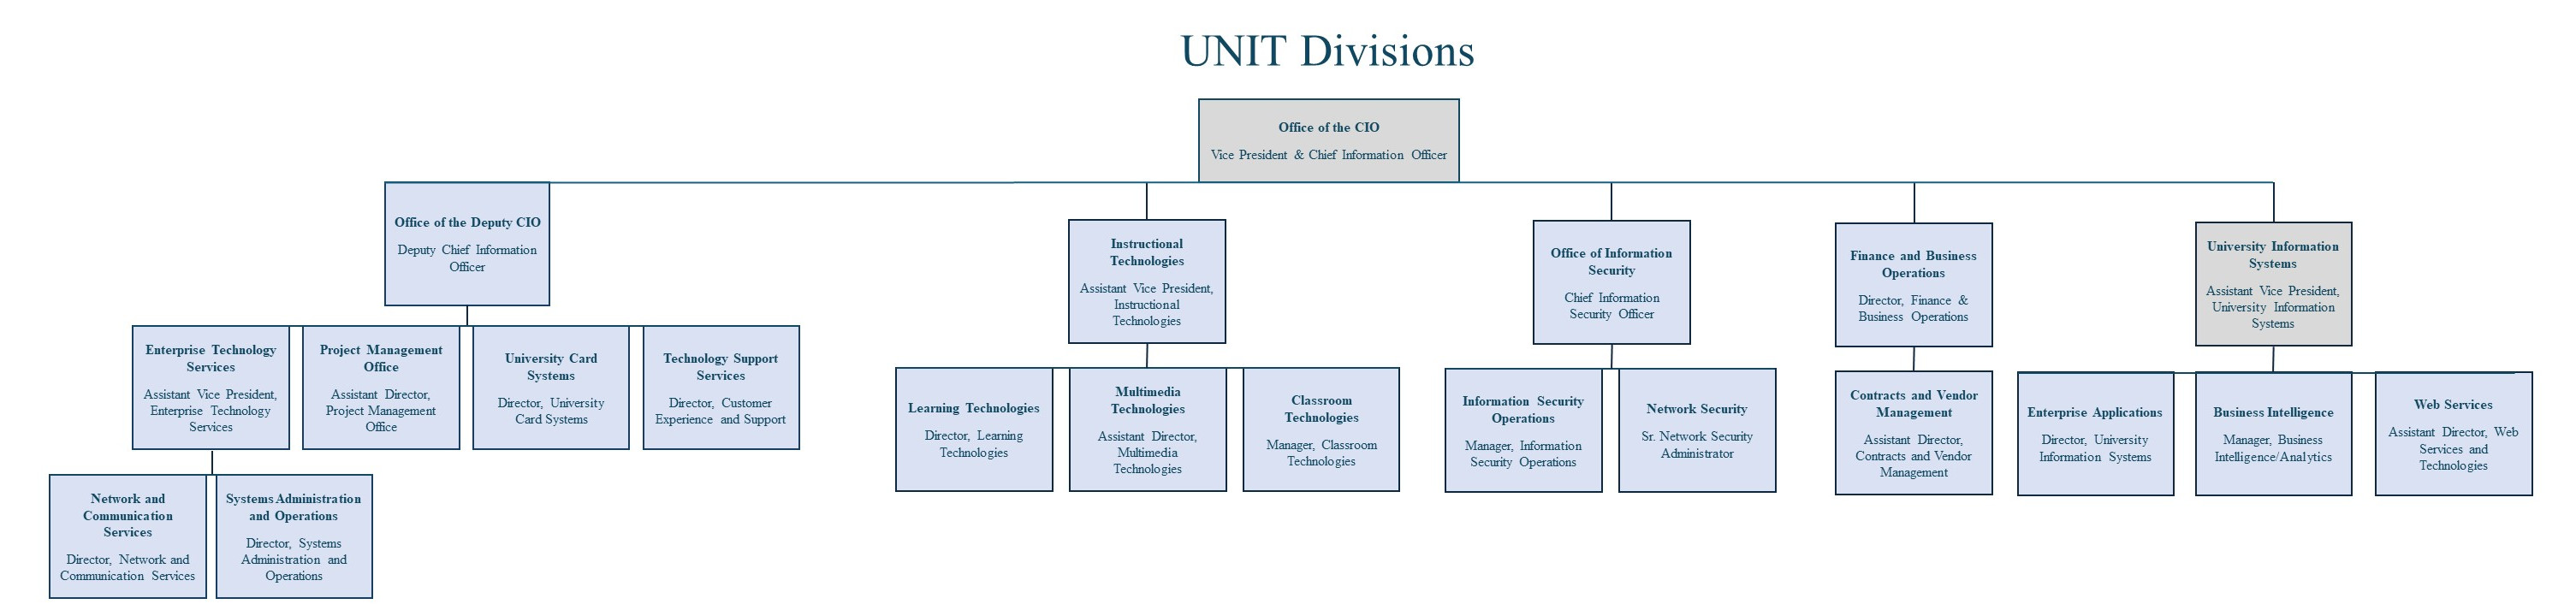 UNIT Divisions